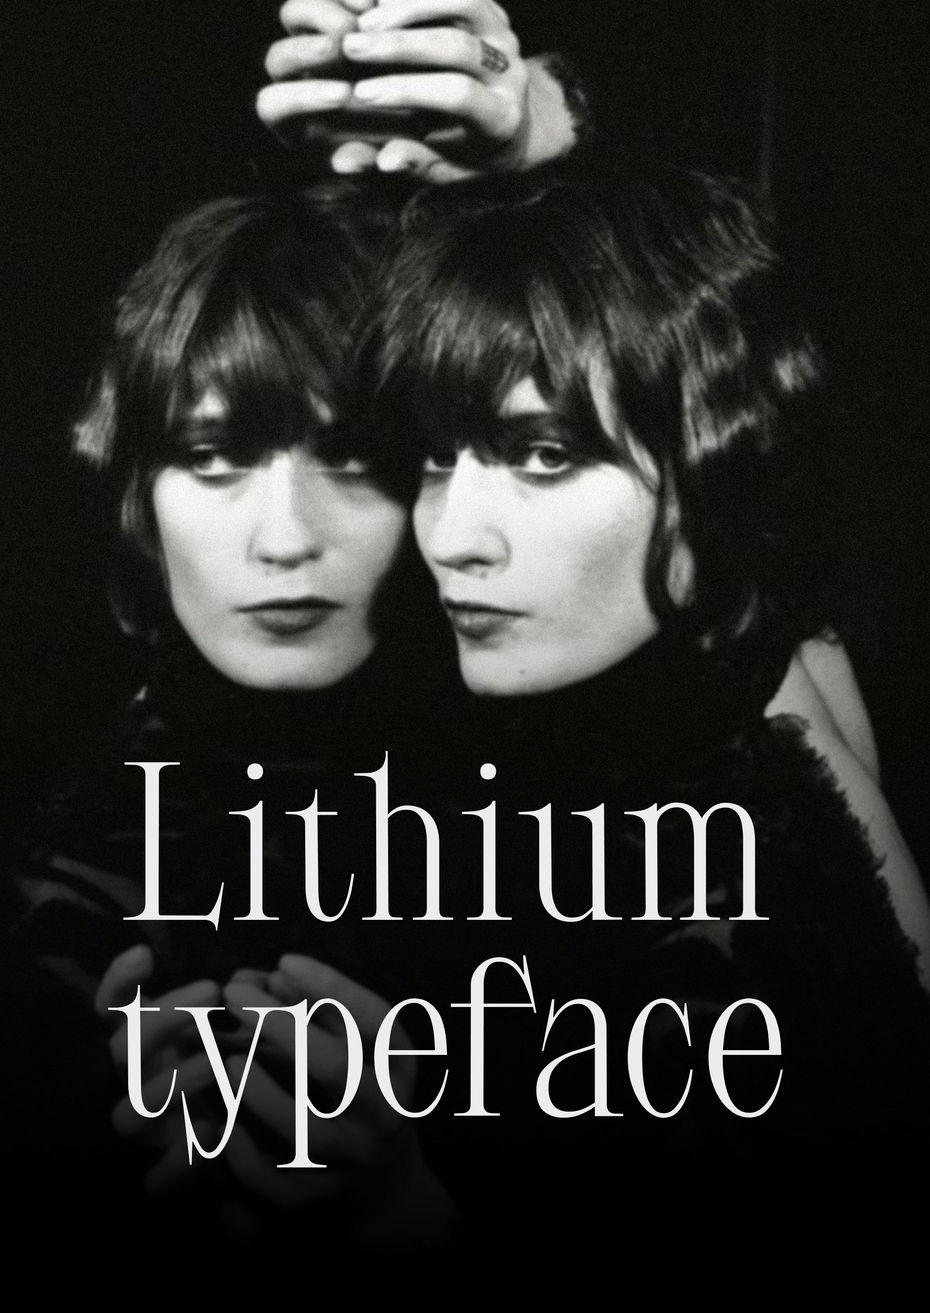 Lithium typeface